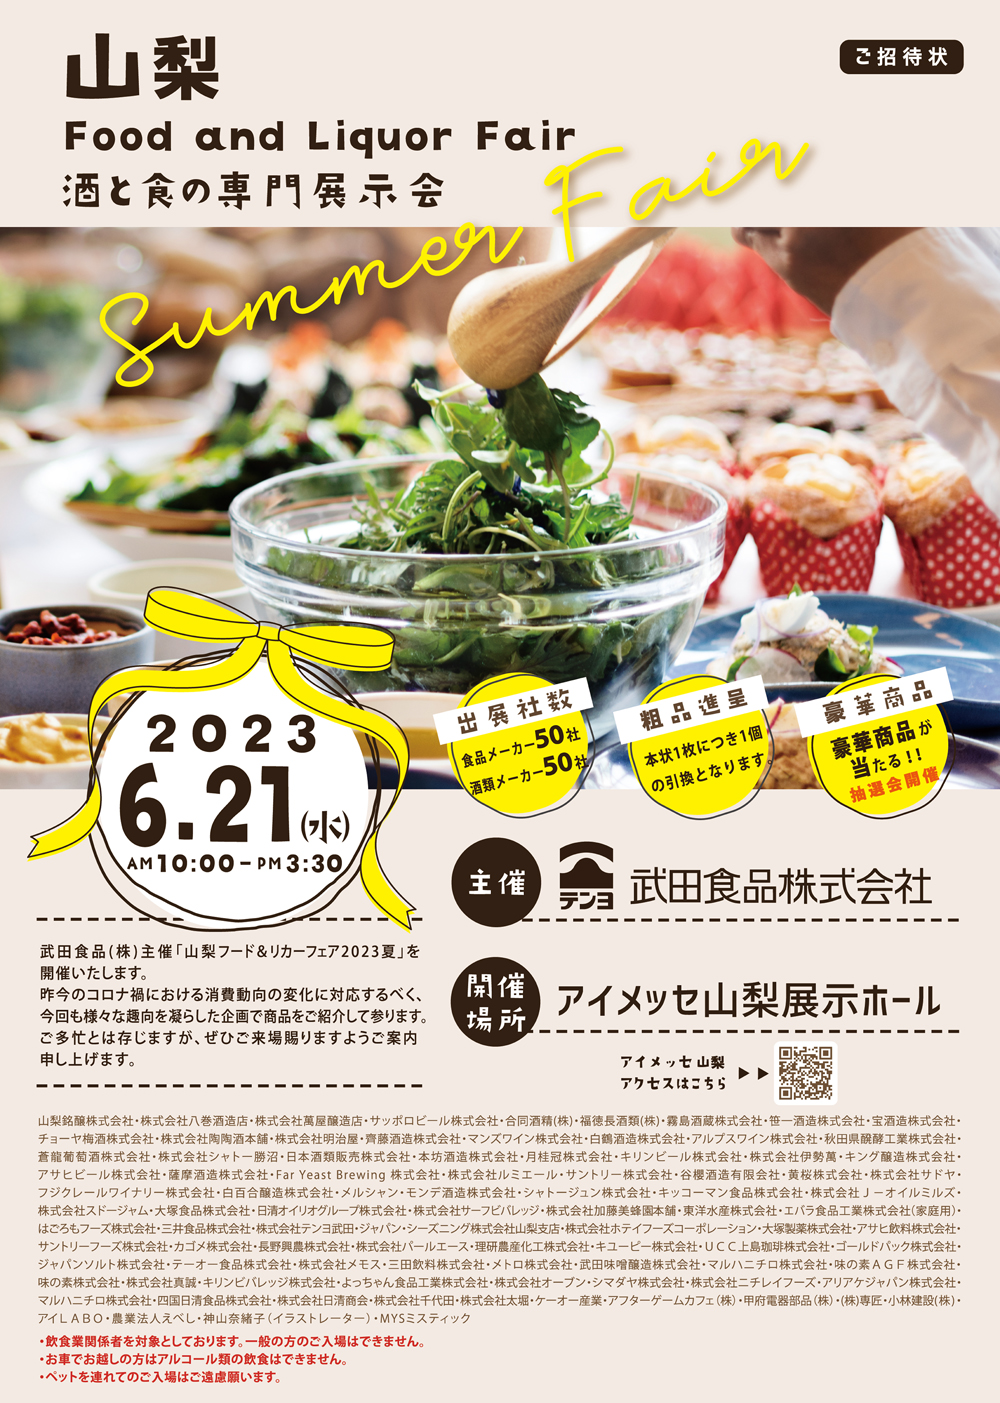 武田食品 2023年6月 展示会 お知らせ